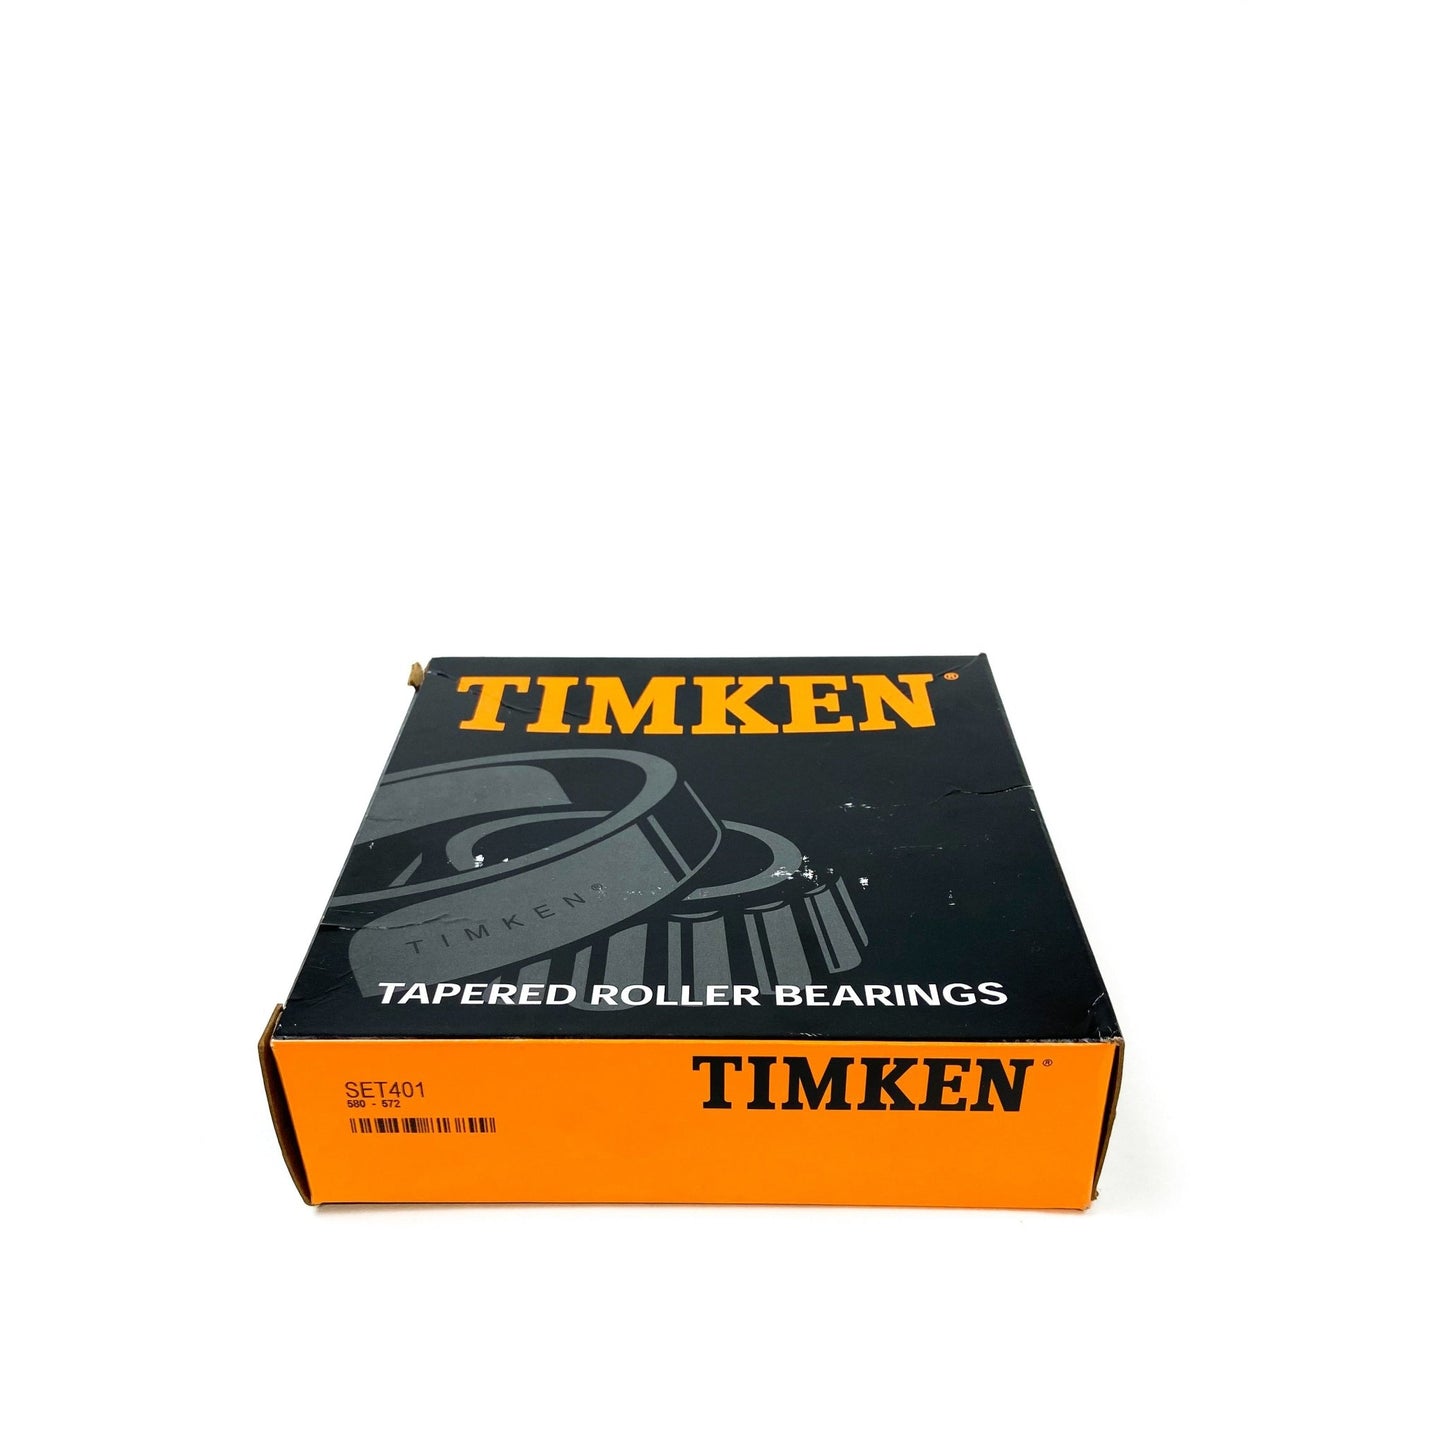 Timken-TMKN-Set401